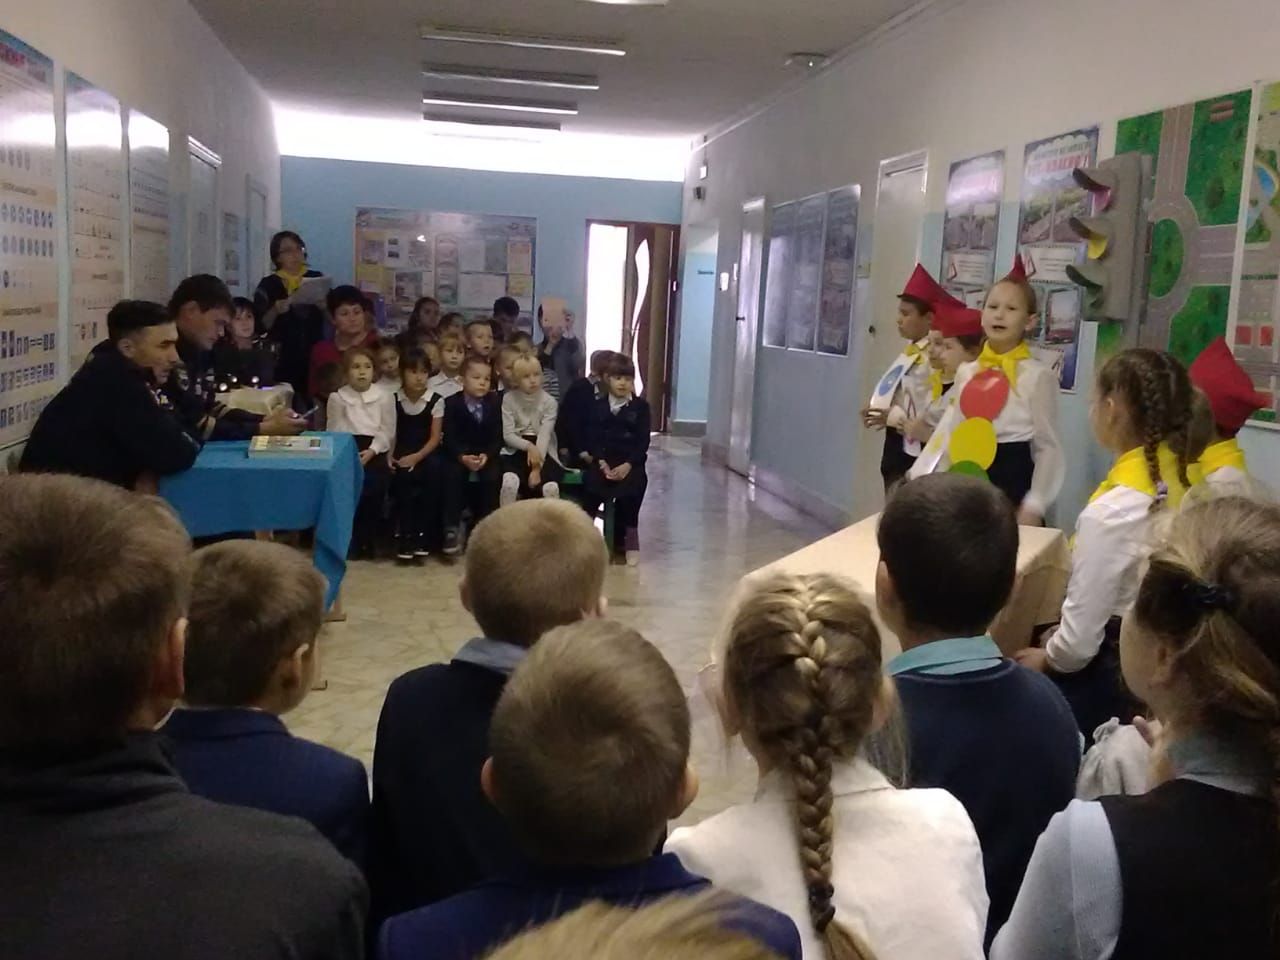 Учащиеся Бишевской школы встретились с инспектором ГИБДД